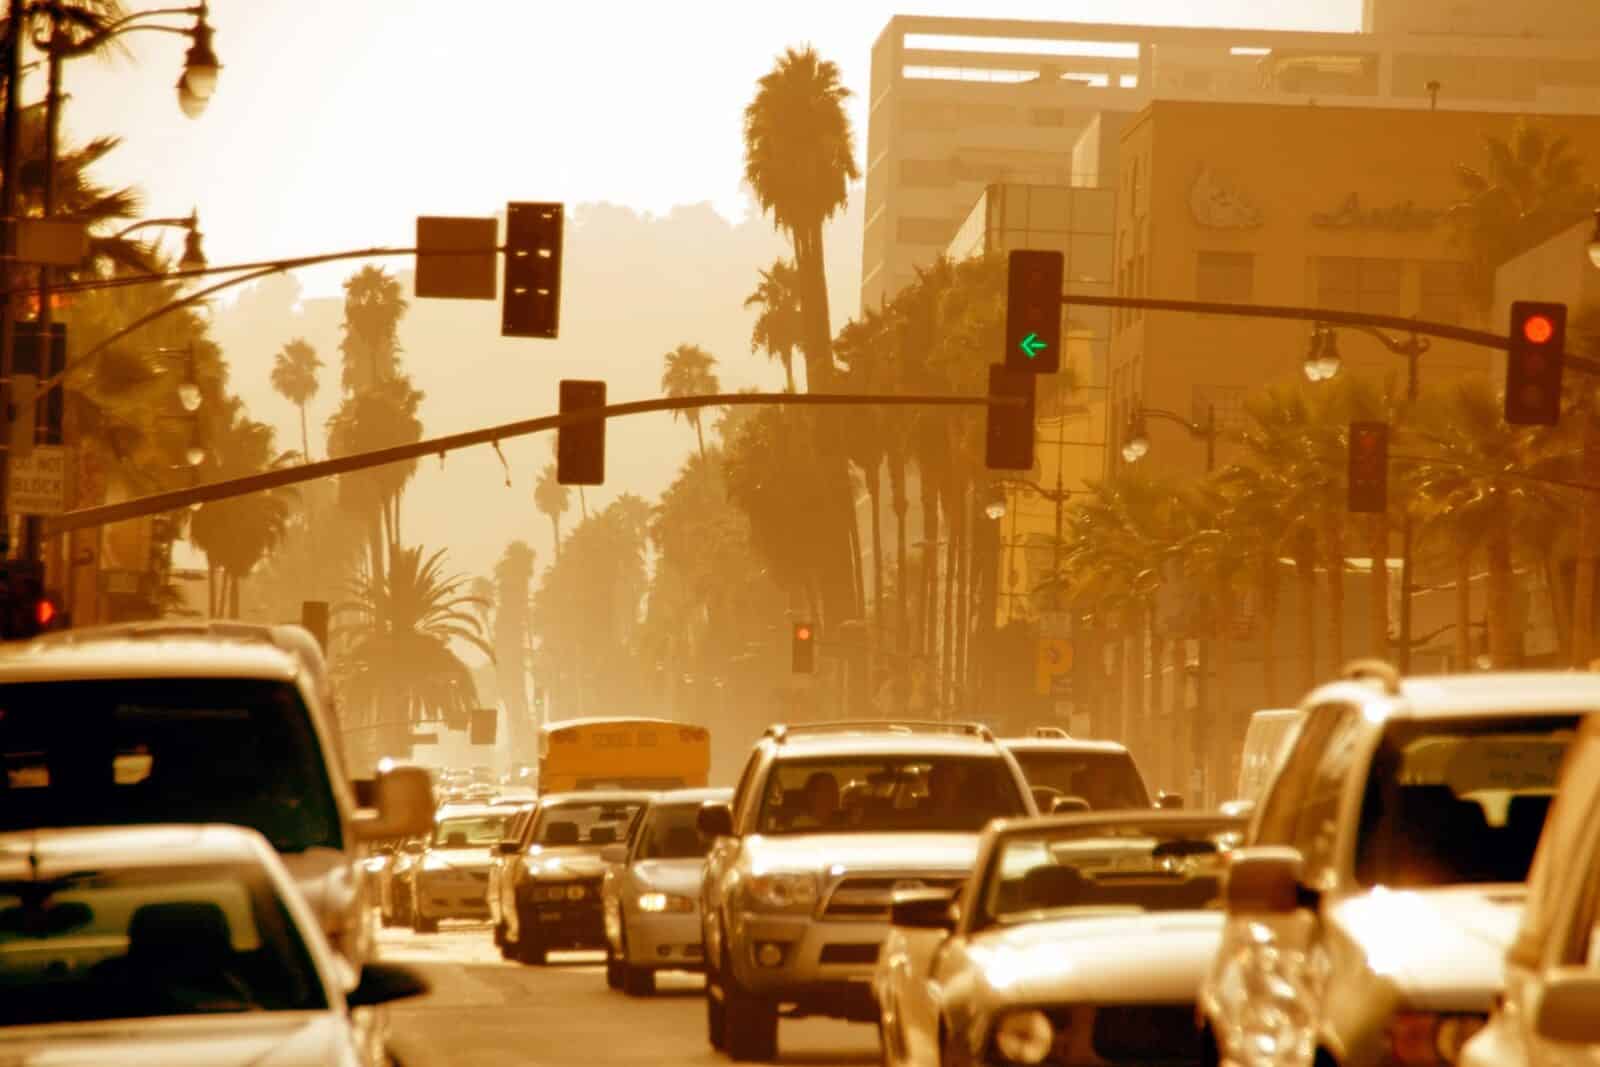 المدن الأمريكية غير الصحية للهواء الملوث